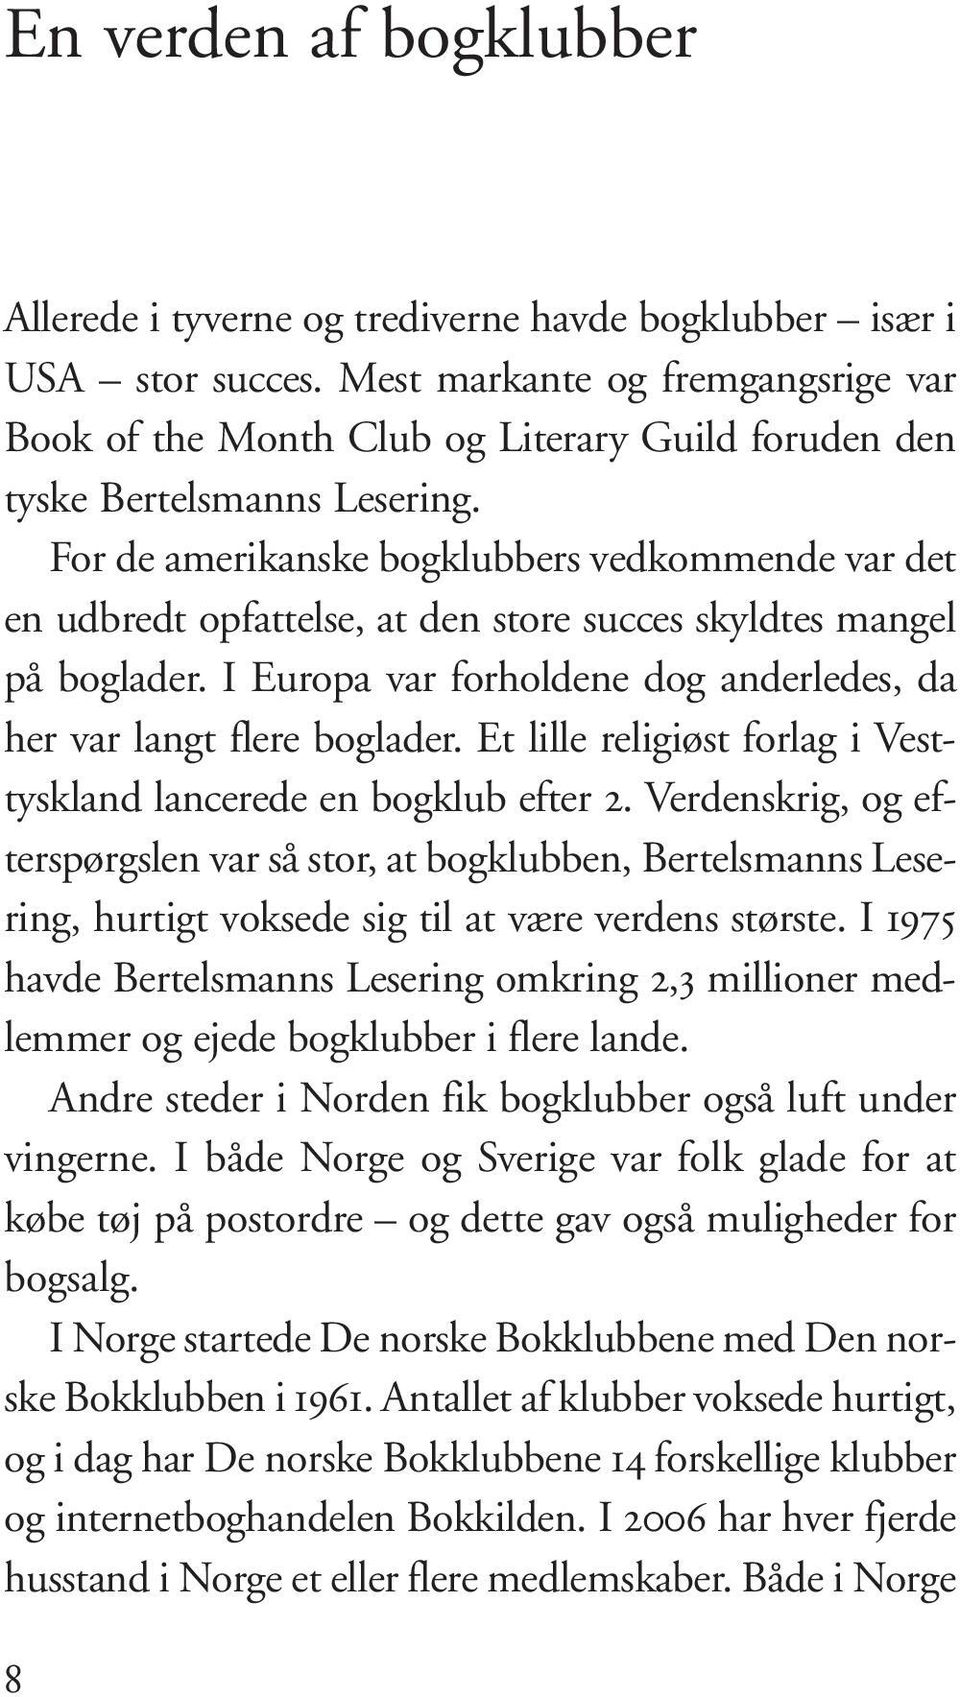 For de amerikanske bogklubbers vedkommende var det en udbredt opfattelse, at den store succes skyldtes mangel på boglader. I Europa var forholdene dog anderledes, da her var langt flere boglader.